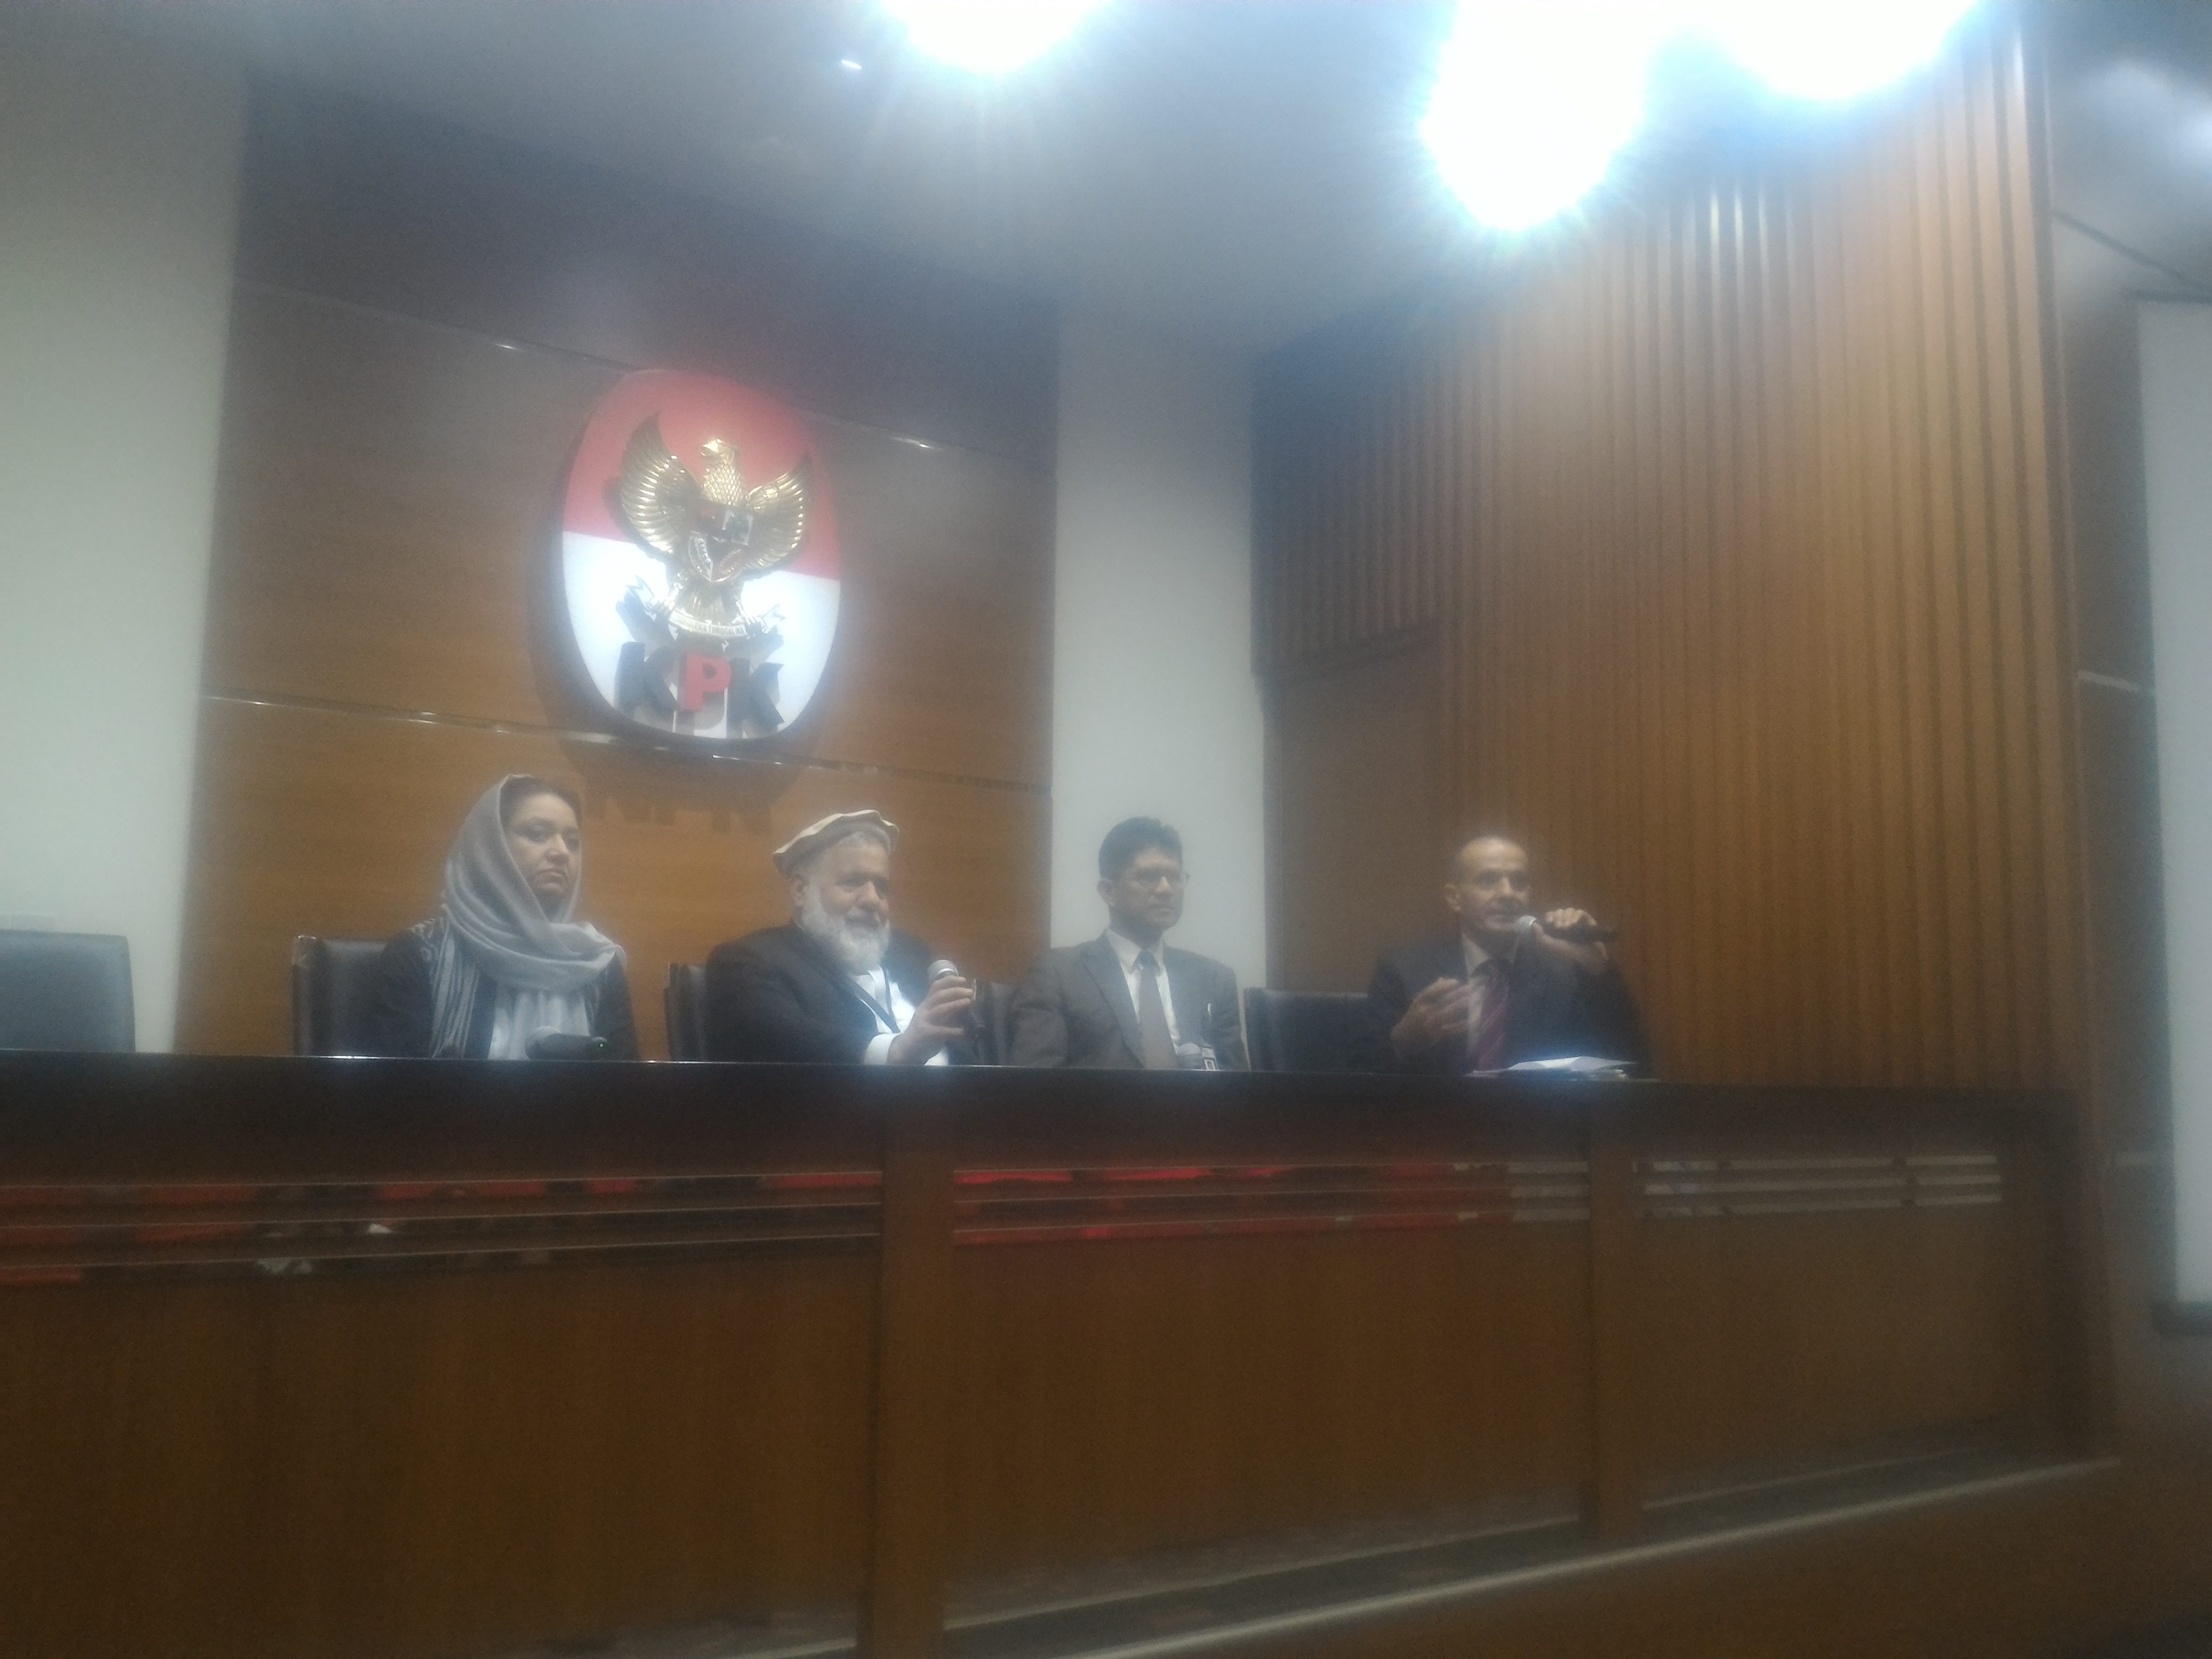 Menteri Kehakiman Afganistan (kedua dari kiri) bersama Duta Besar Afganistan untuk Indonesia (paling kiri) dan Wakil Ketua KPK menggelar konferensi pers di KPK, Rabu (8/3). Foto : NOV